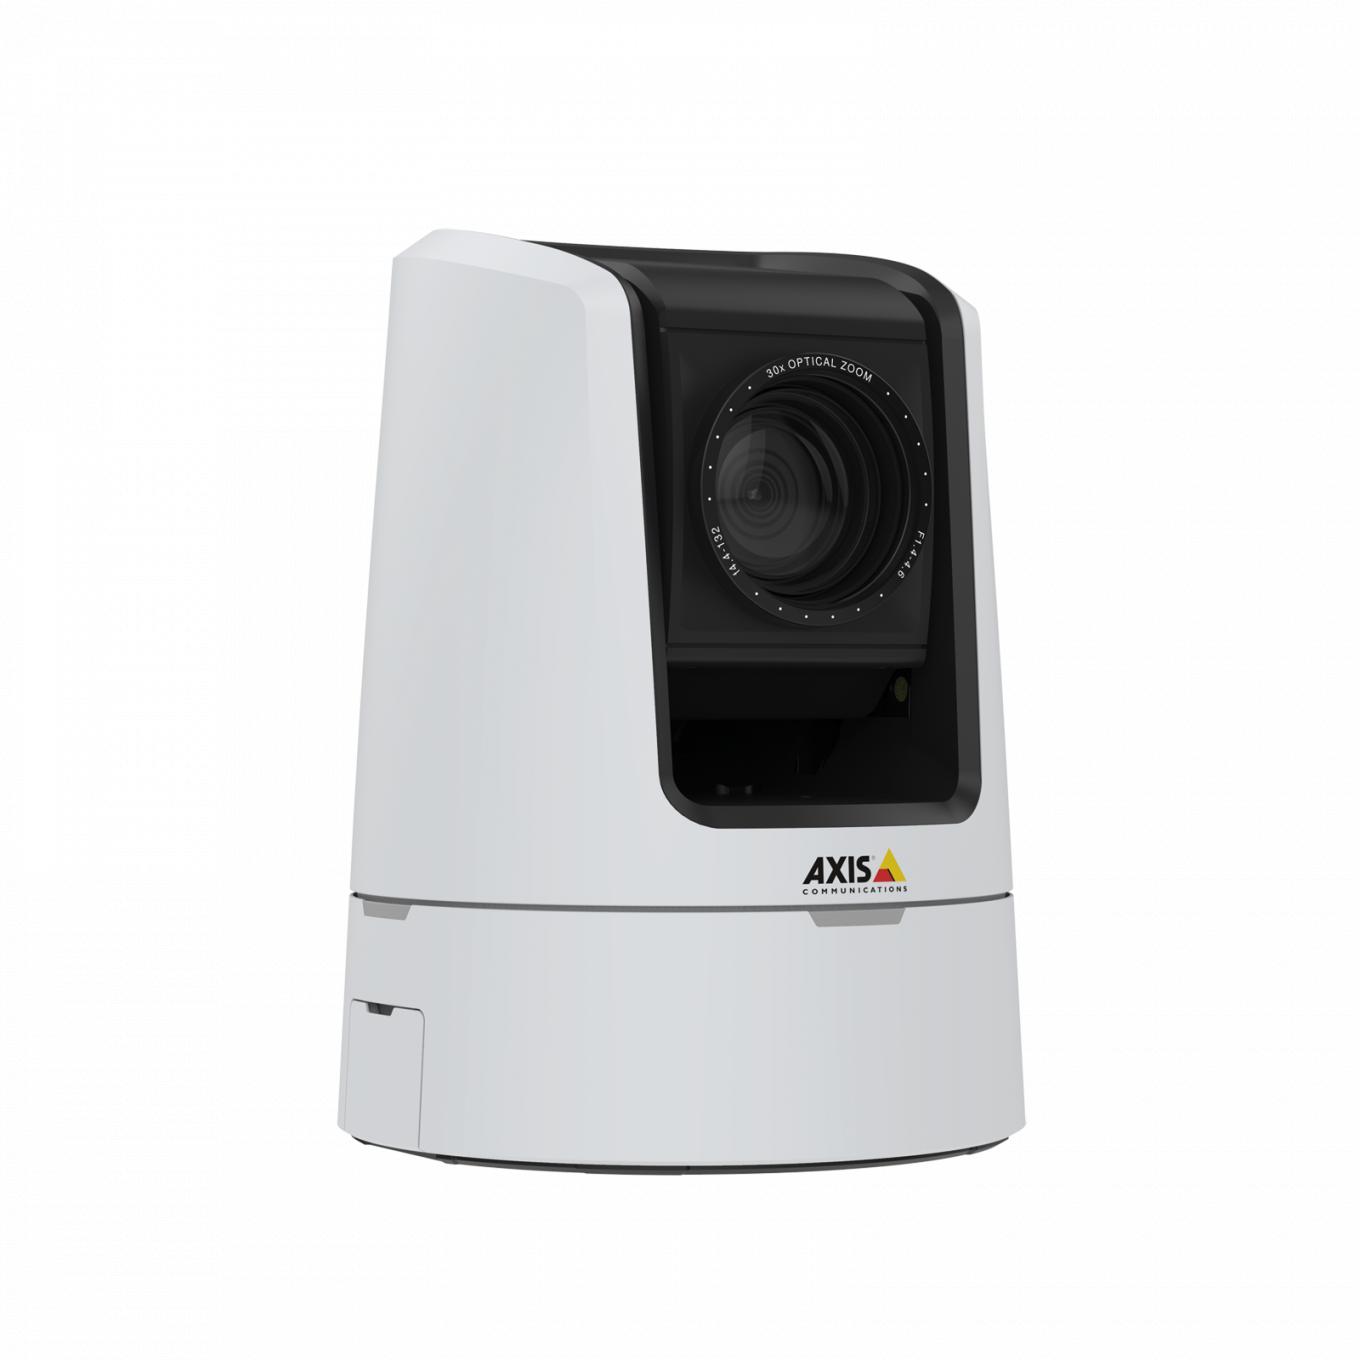 AXIS V5925 PTZ Network Camera oferuje jakość transmisji HDTV 1080p.